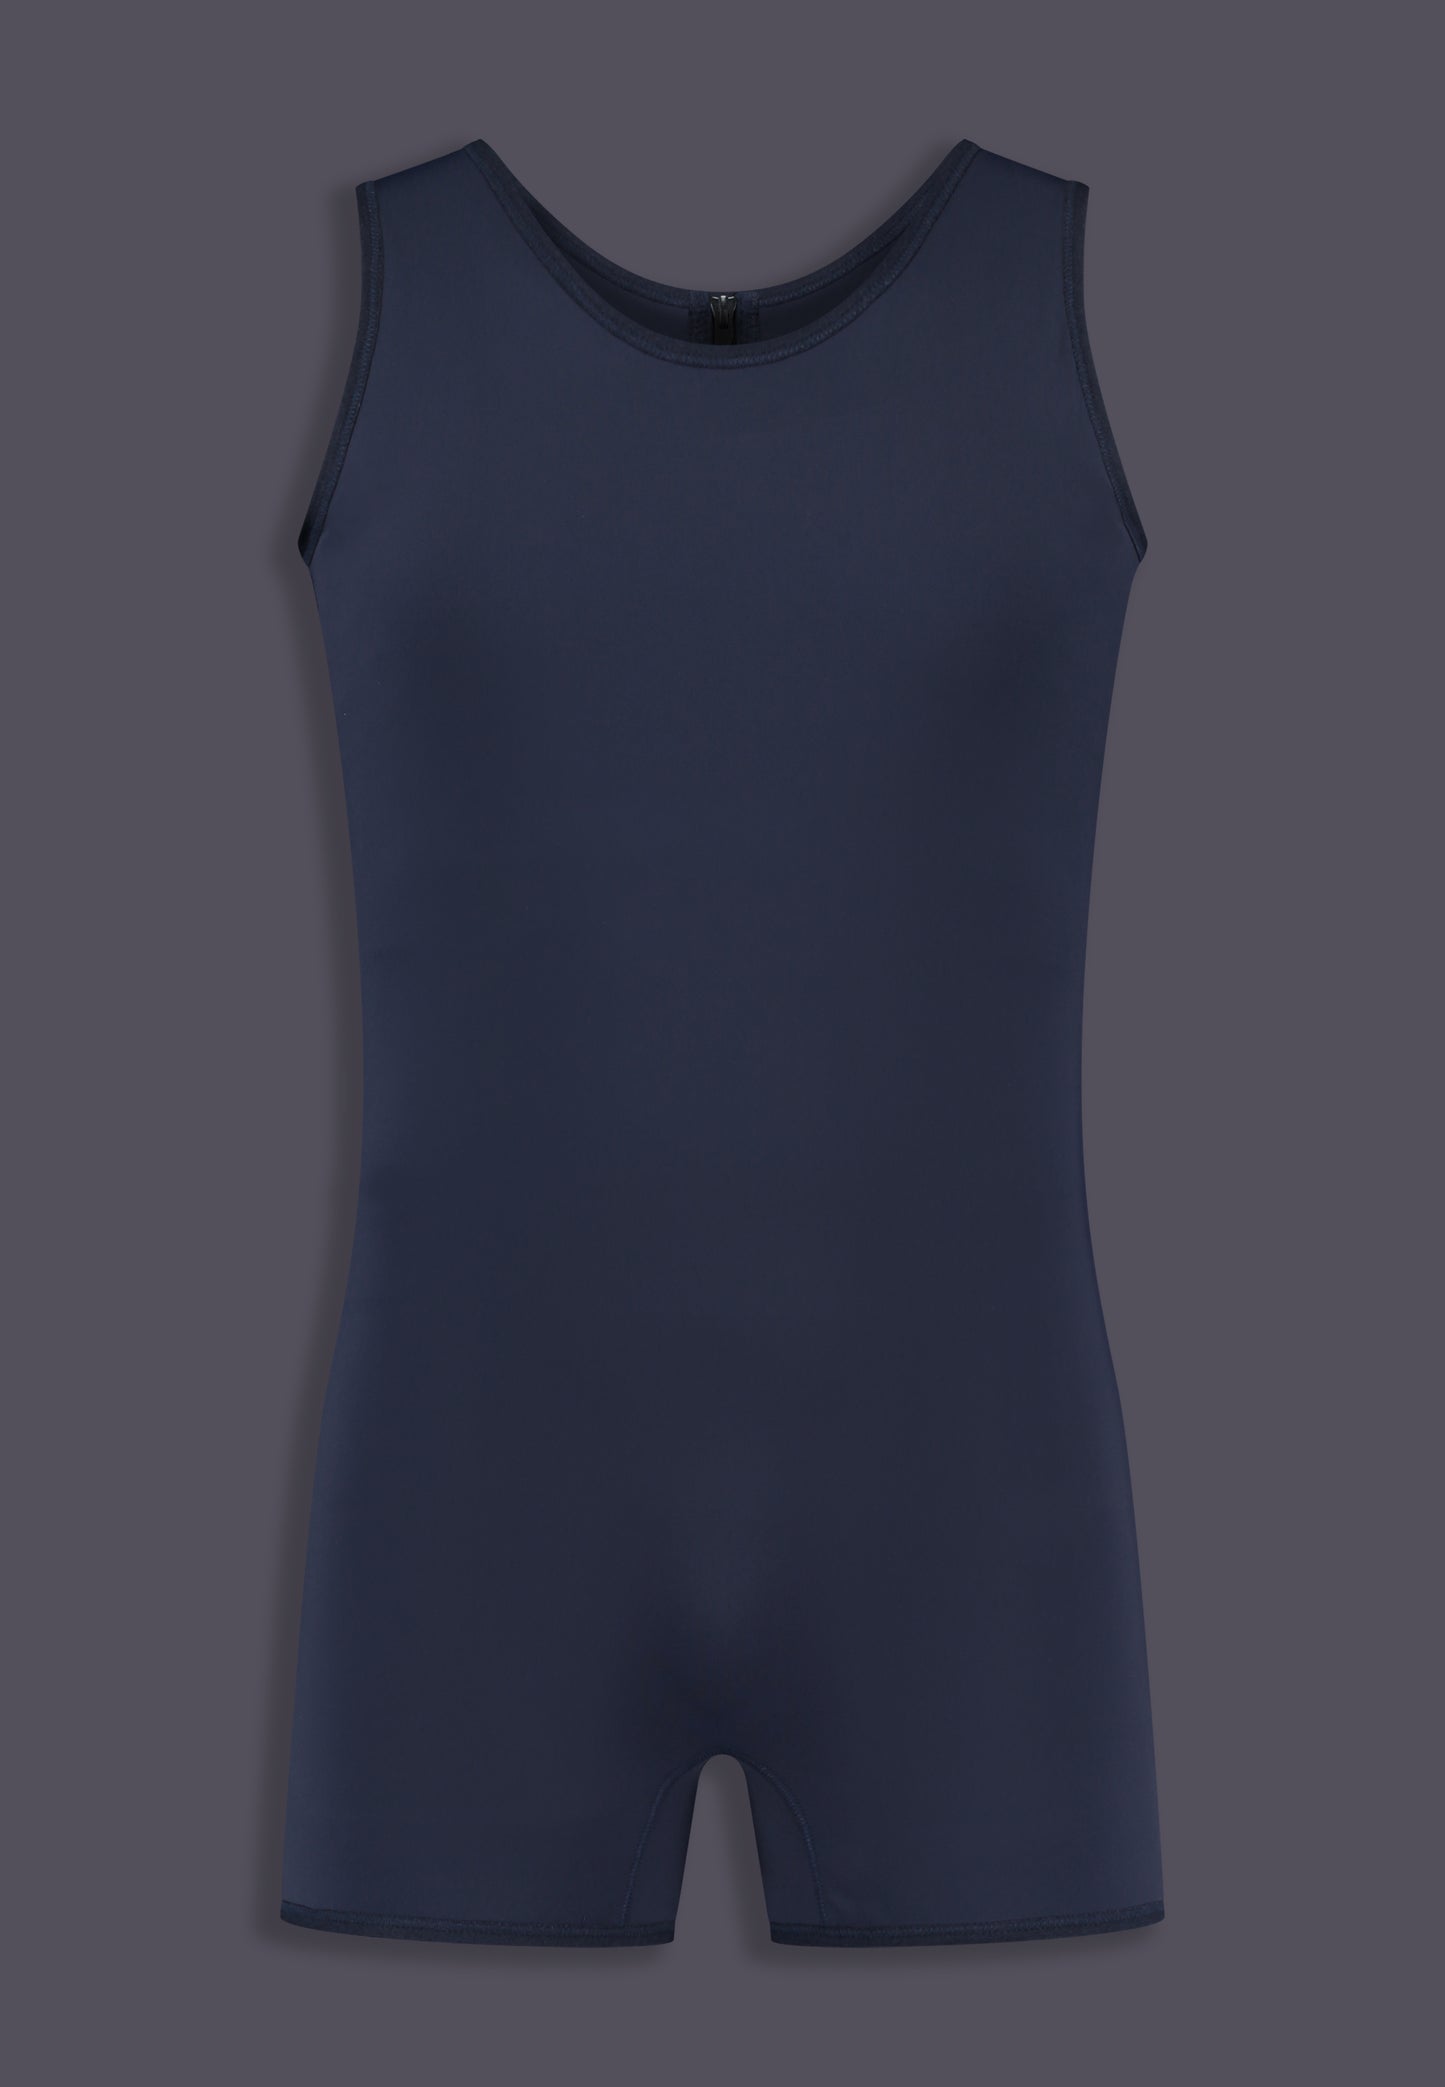 Swimsuit Binder dark blue, front view